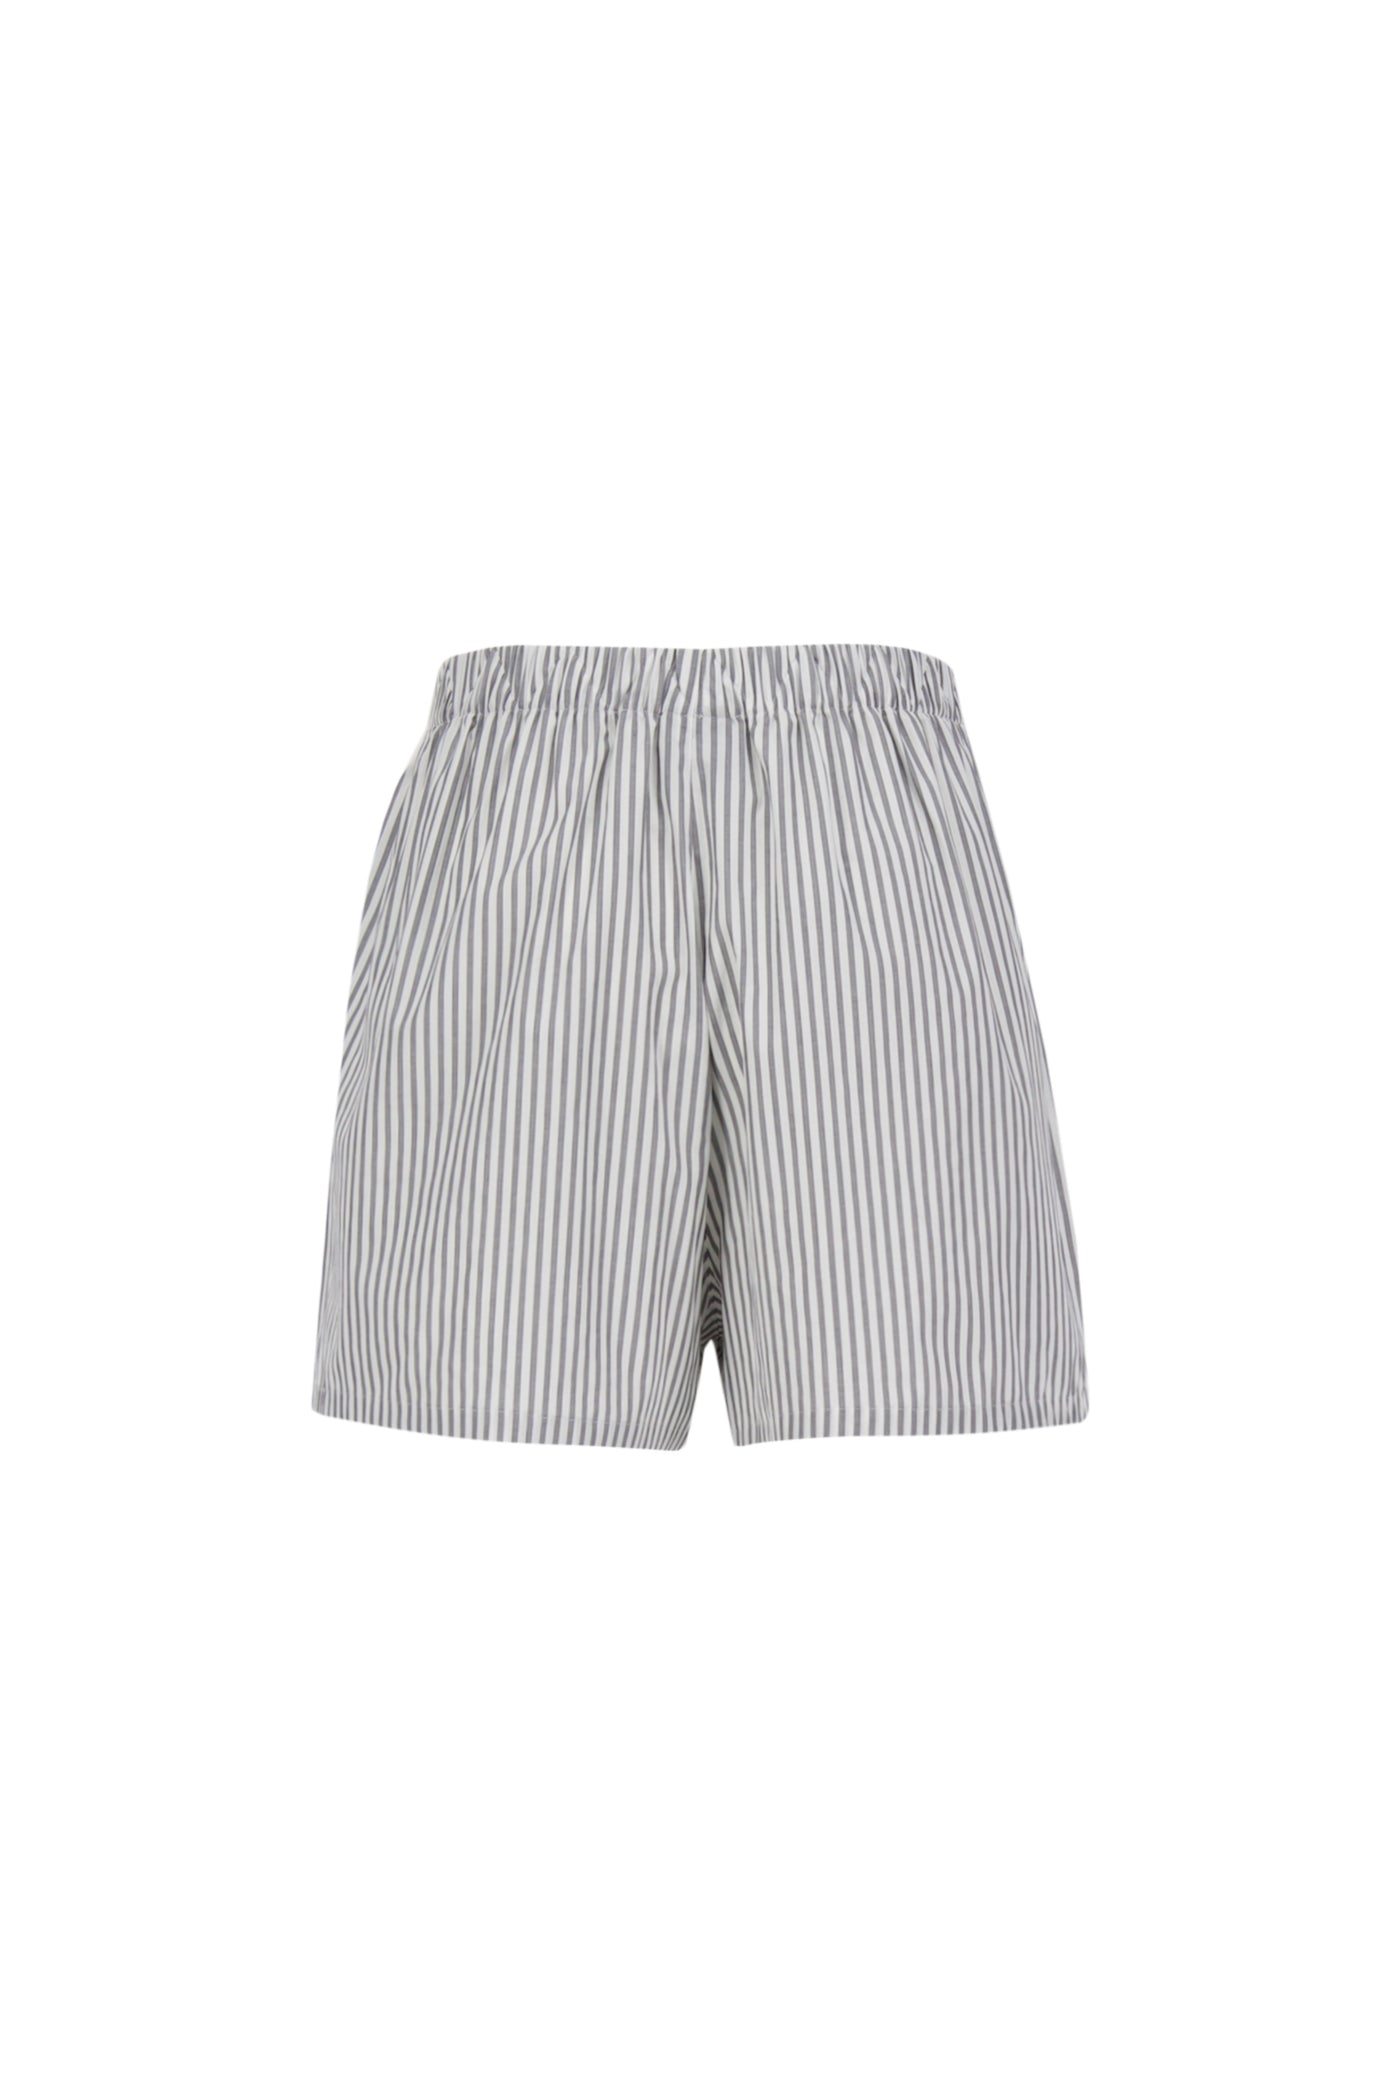 Shorts Stripes Grey